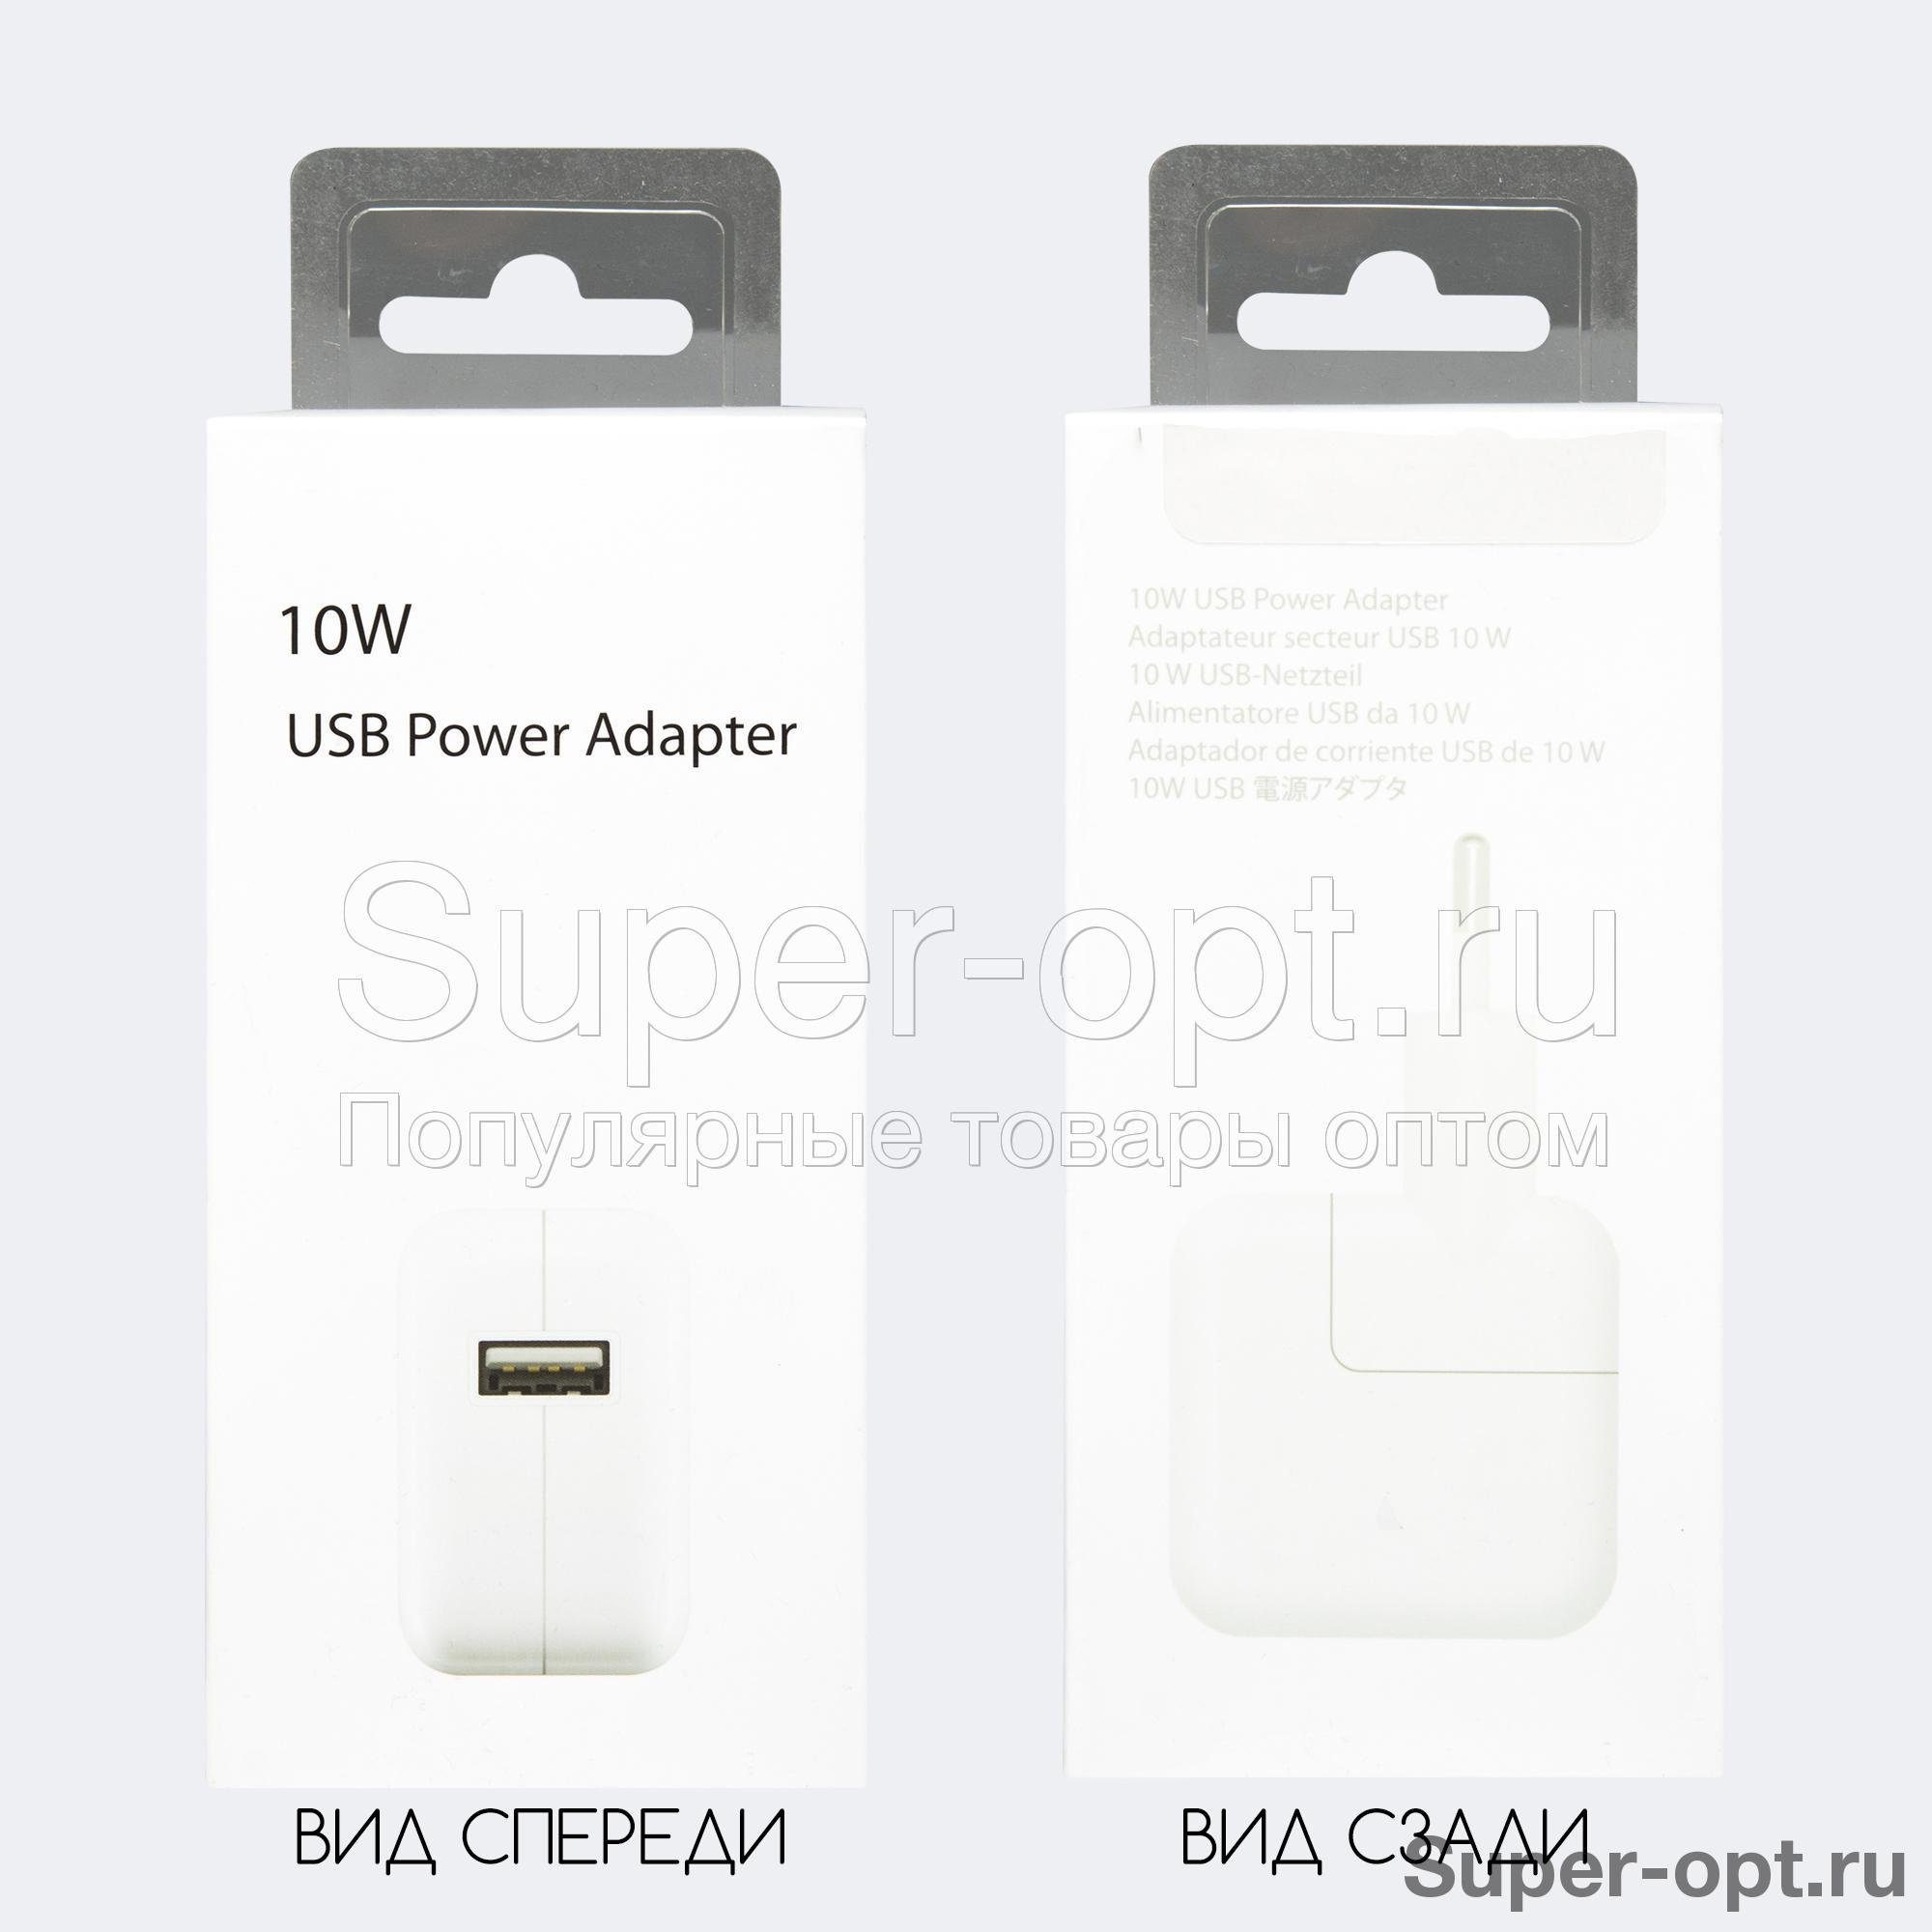 Сетевой USB адаптер Power Adapter